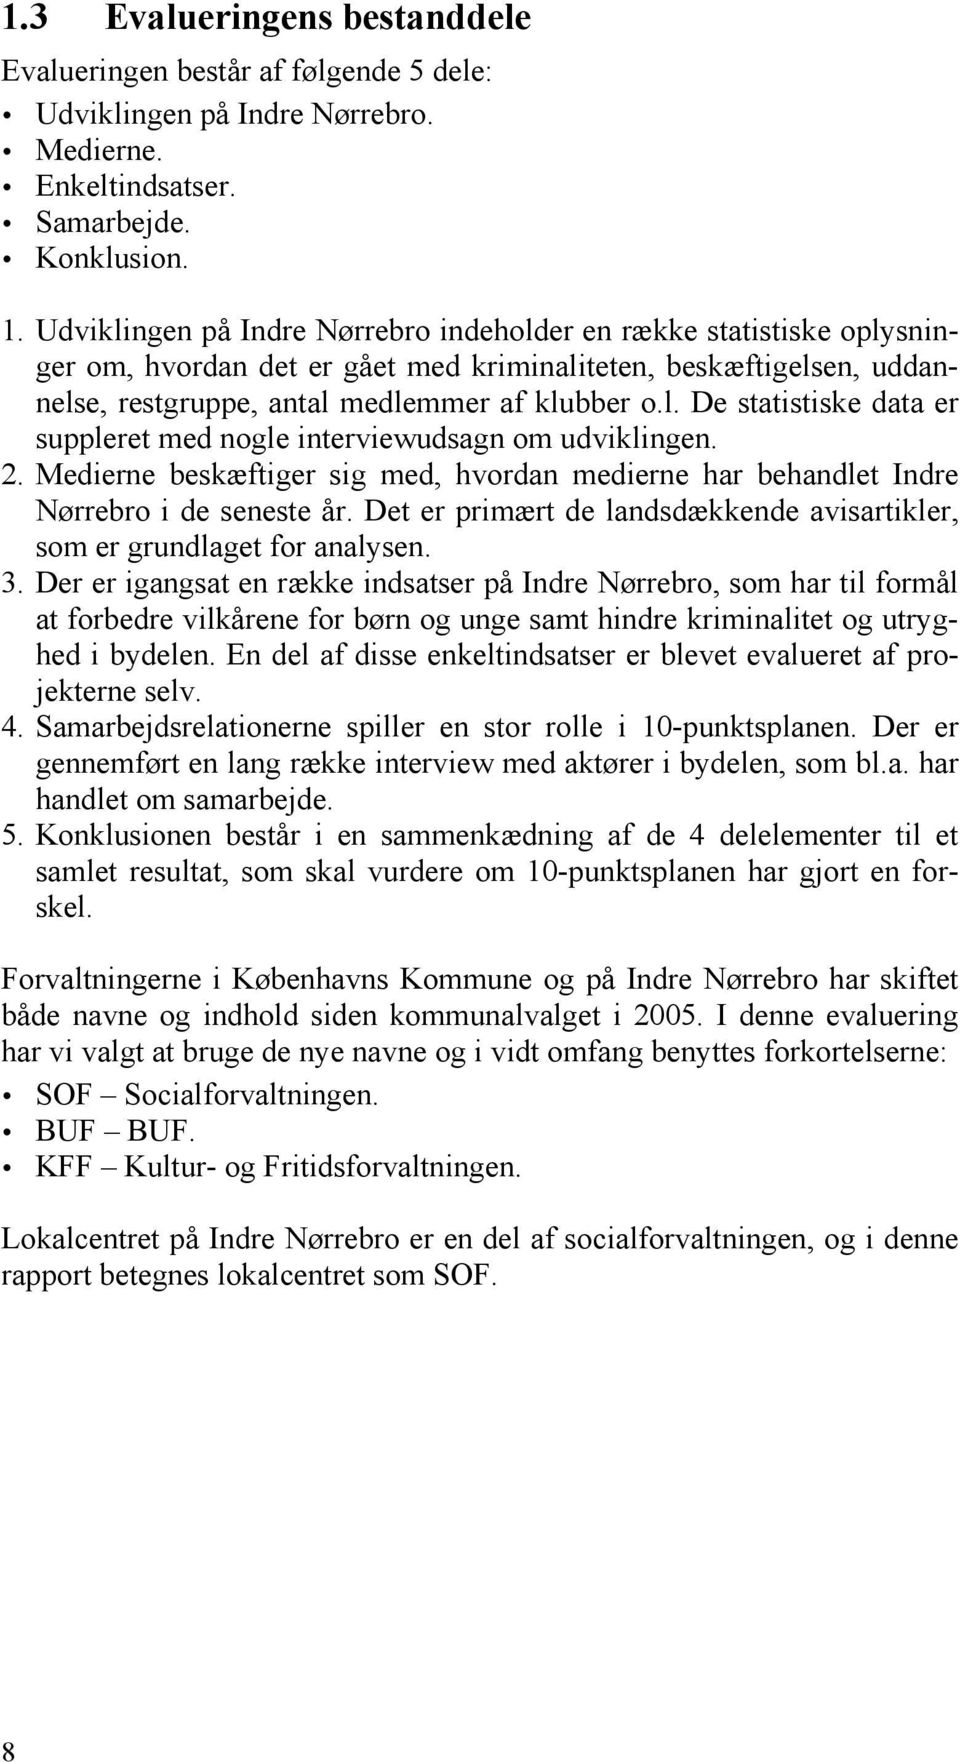 10-punktsplanen på Indre Nørrebro - PDF Free Download